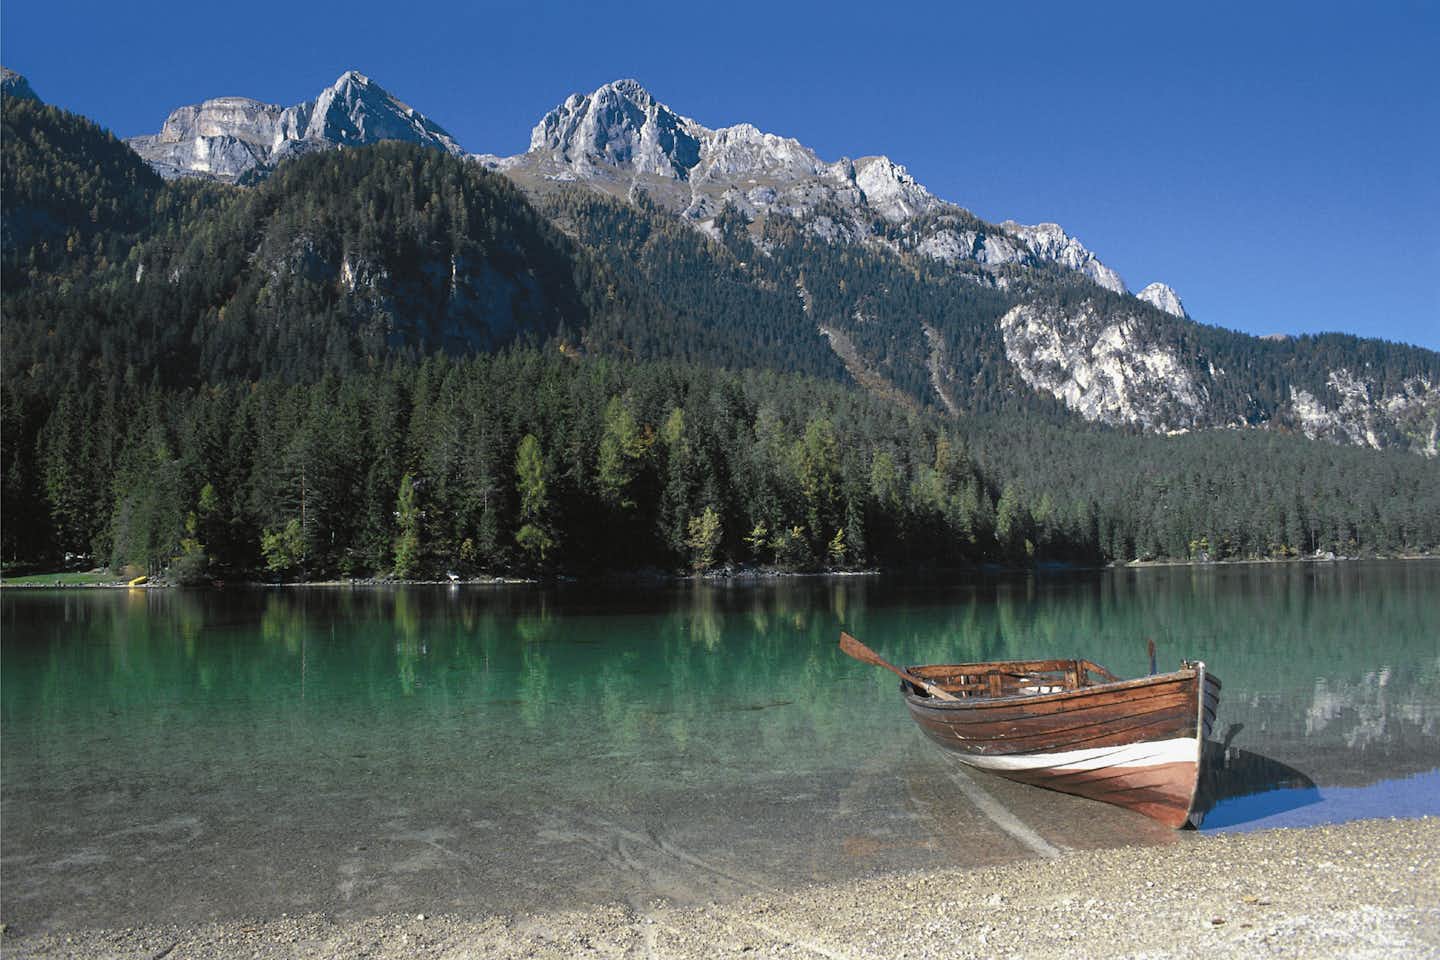 Camping Park Baita Dolomiti  - Boot am See vom Campingplatz in den Alpen